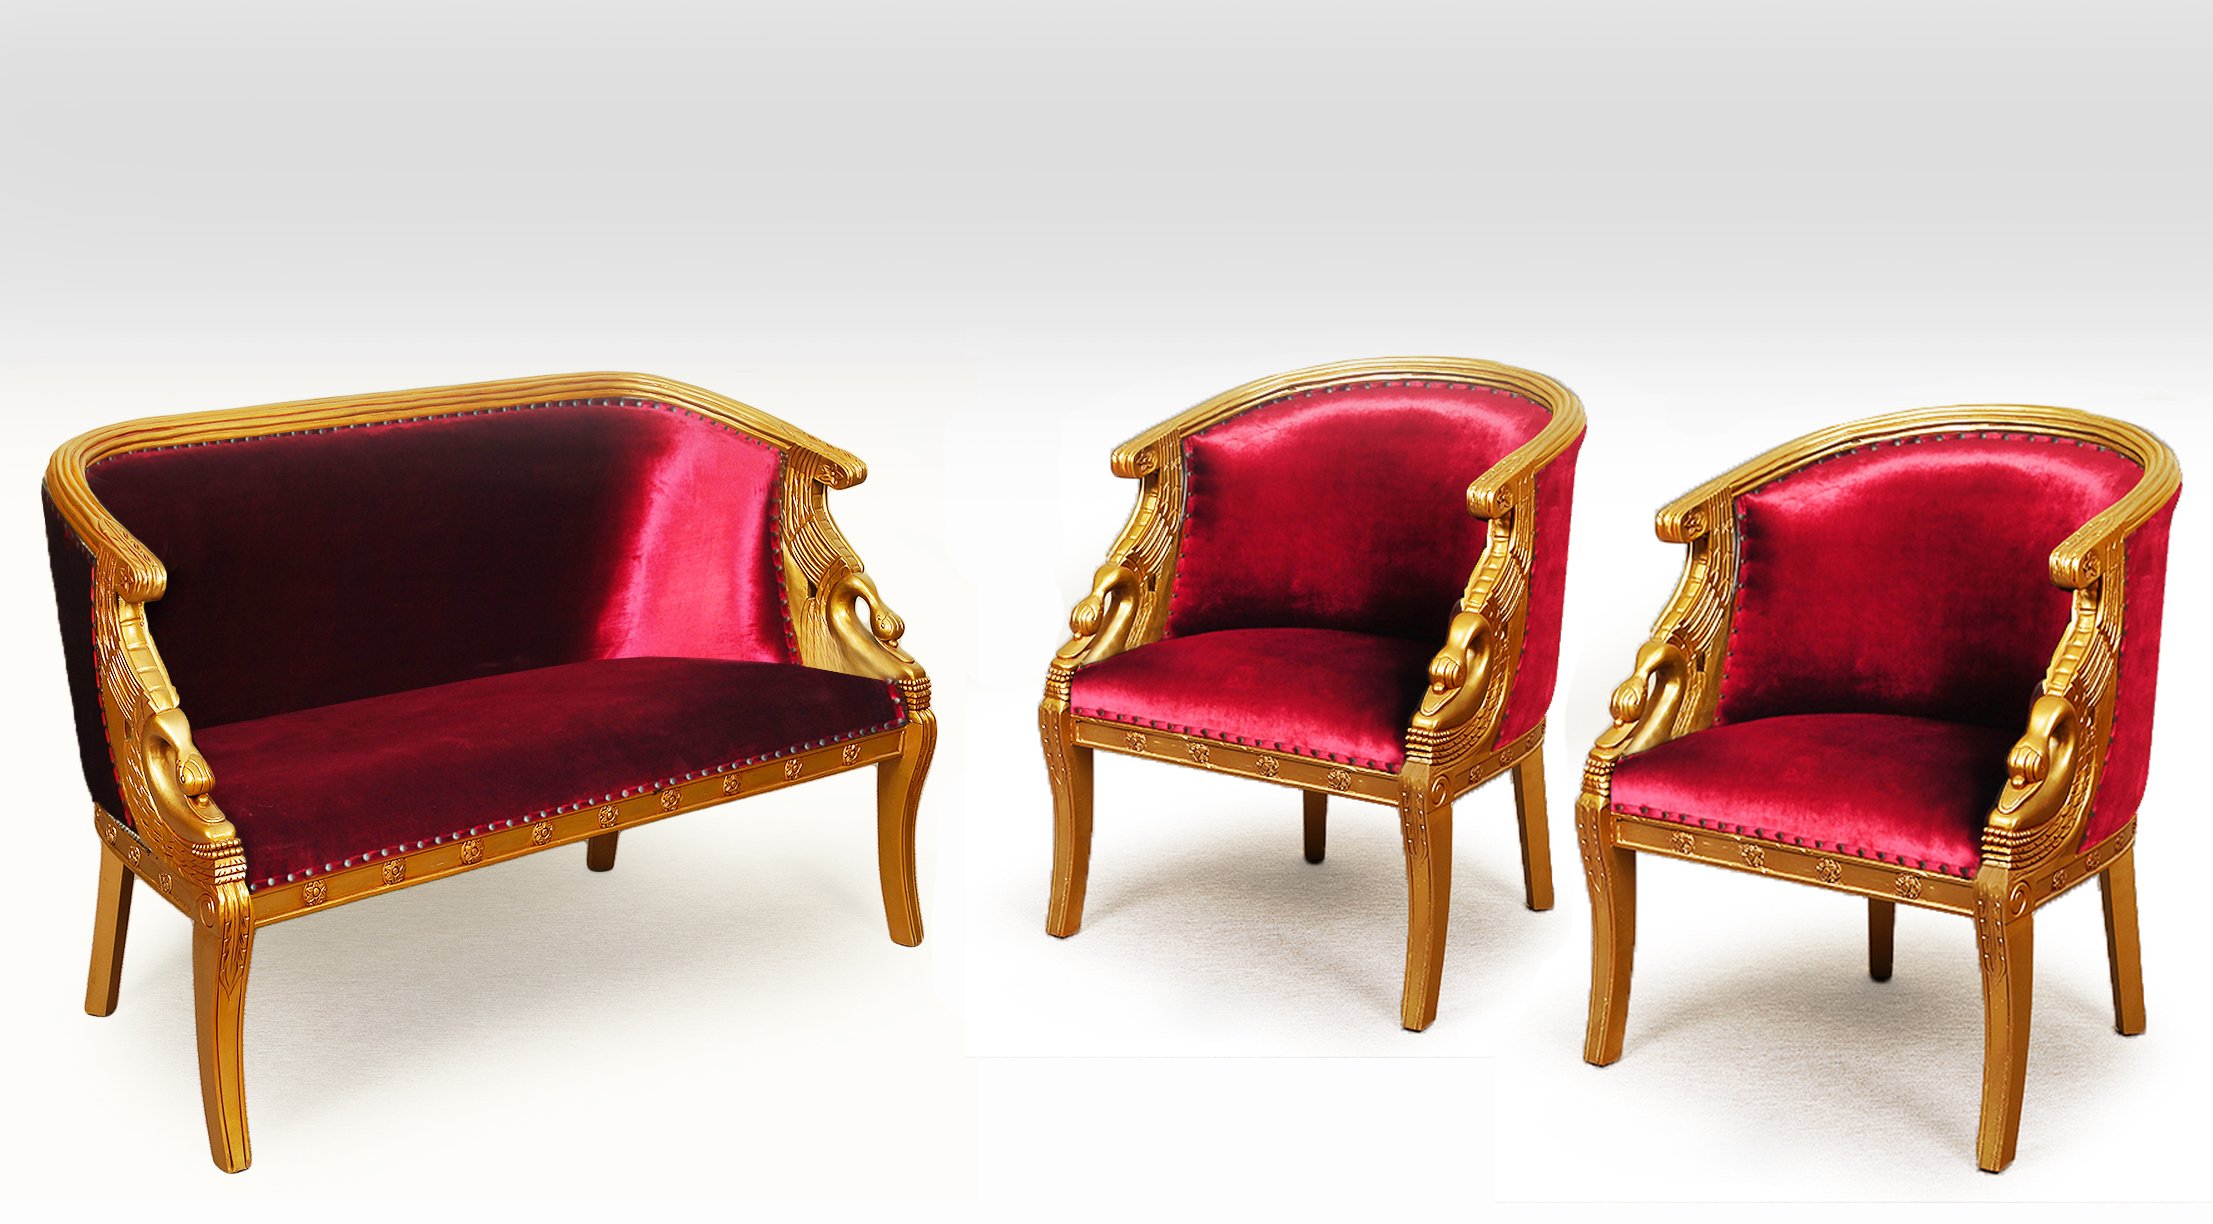 Стул Византия zzimbo. Two armchairs